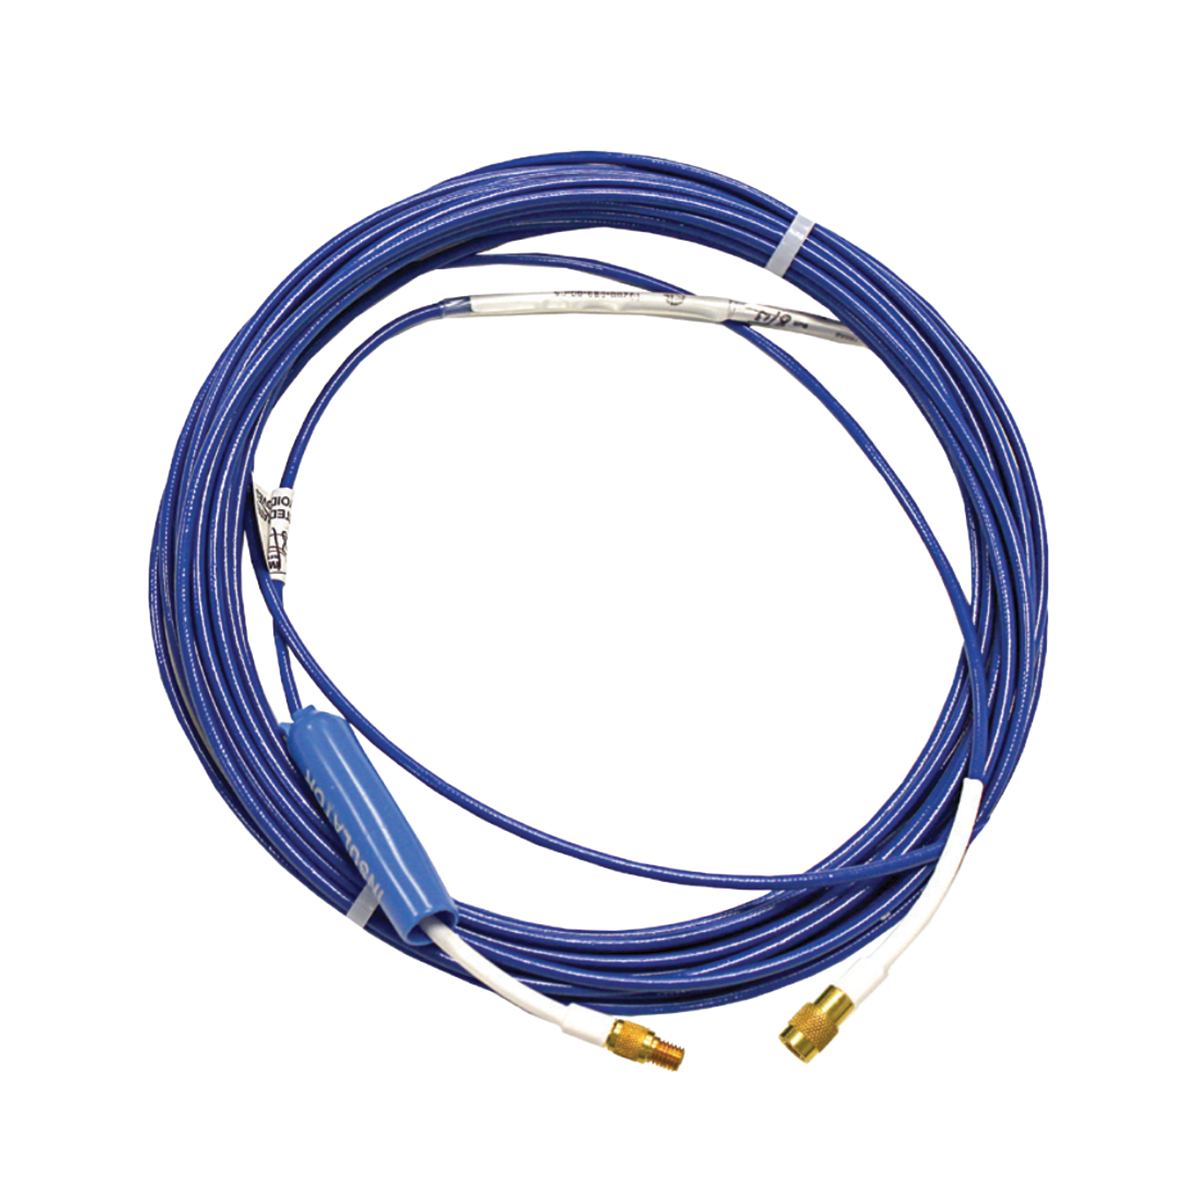 METRIX MX2031-085-00-05 Extension Cable 8.5m, No Armor, Approvals  - CL